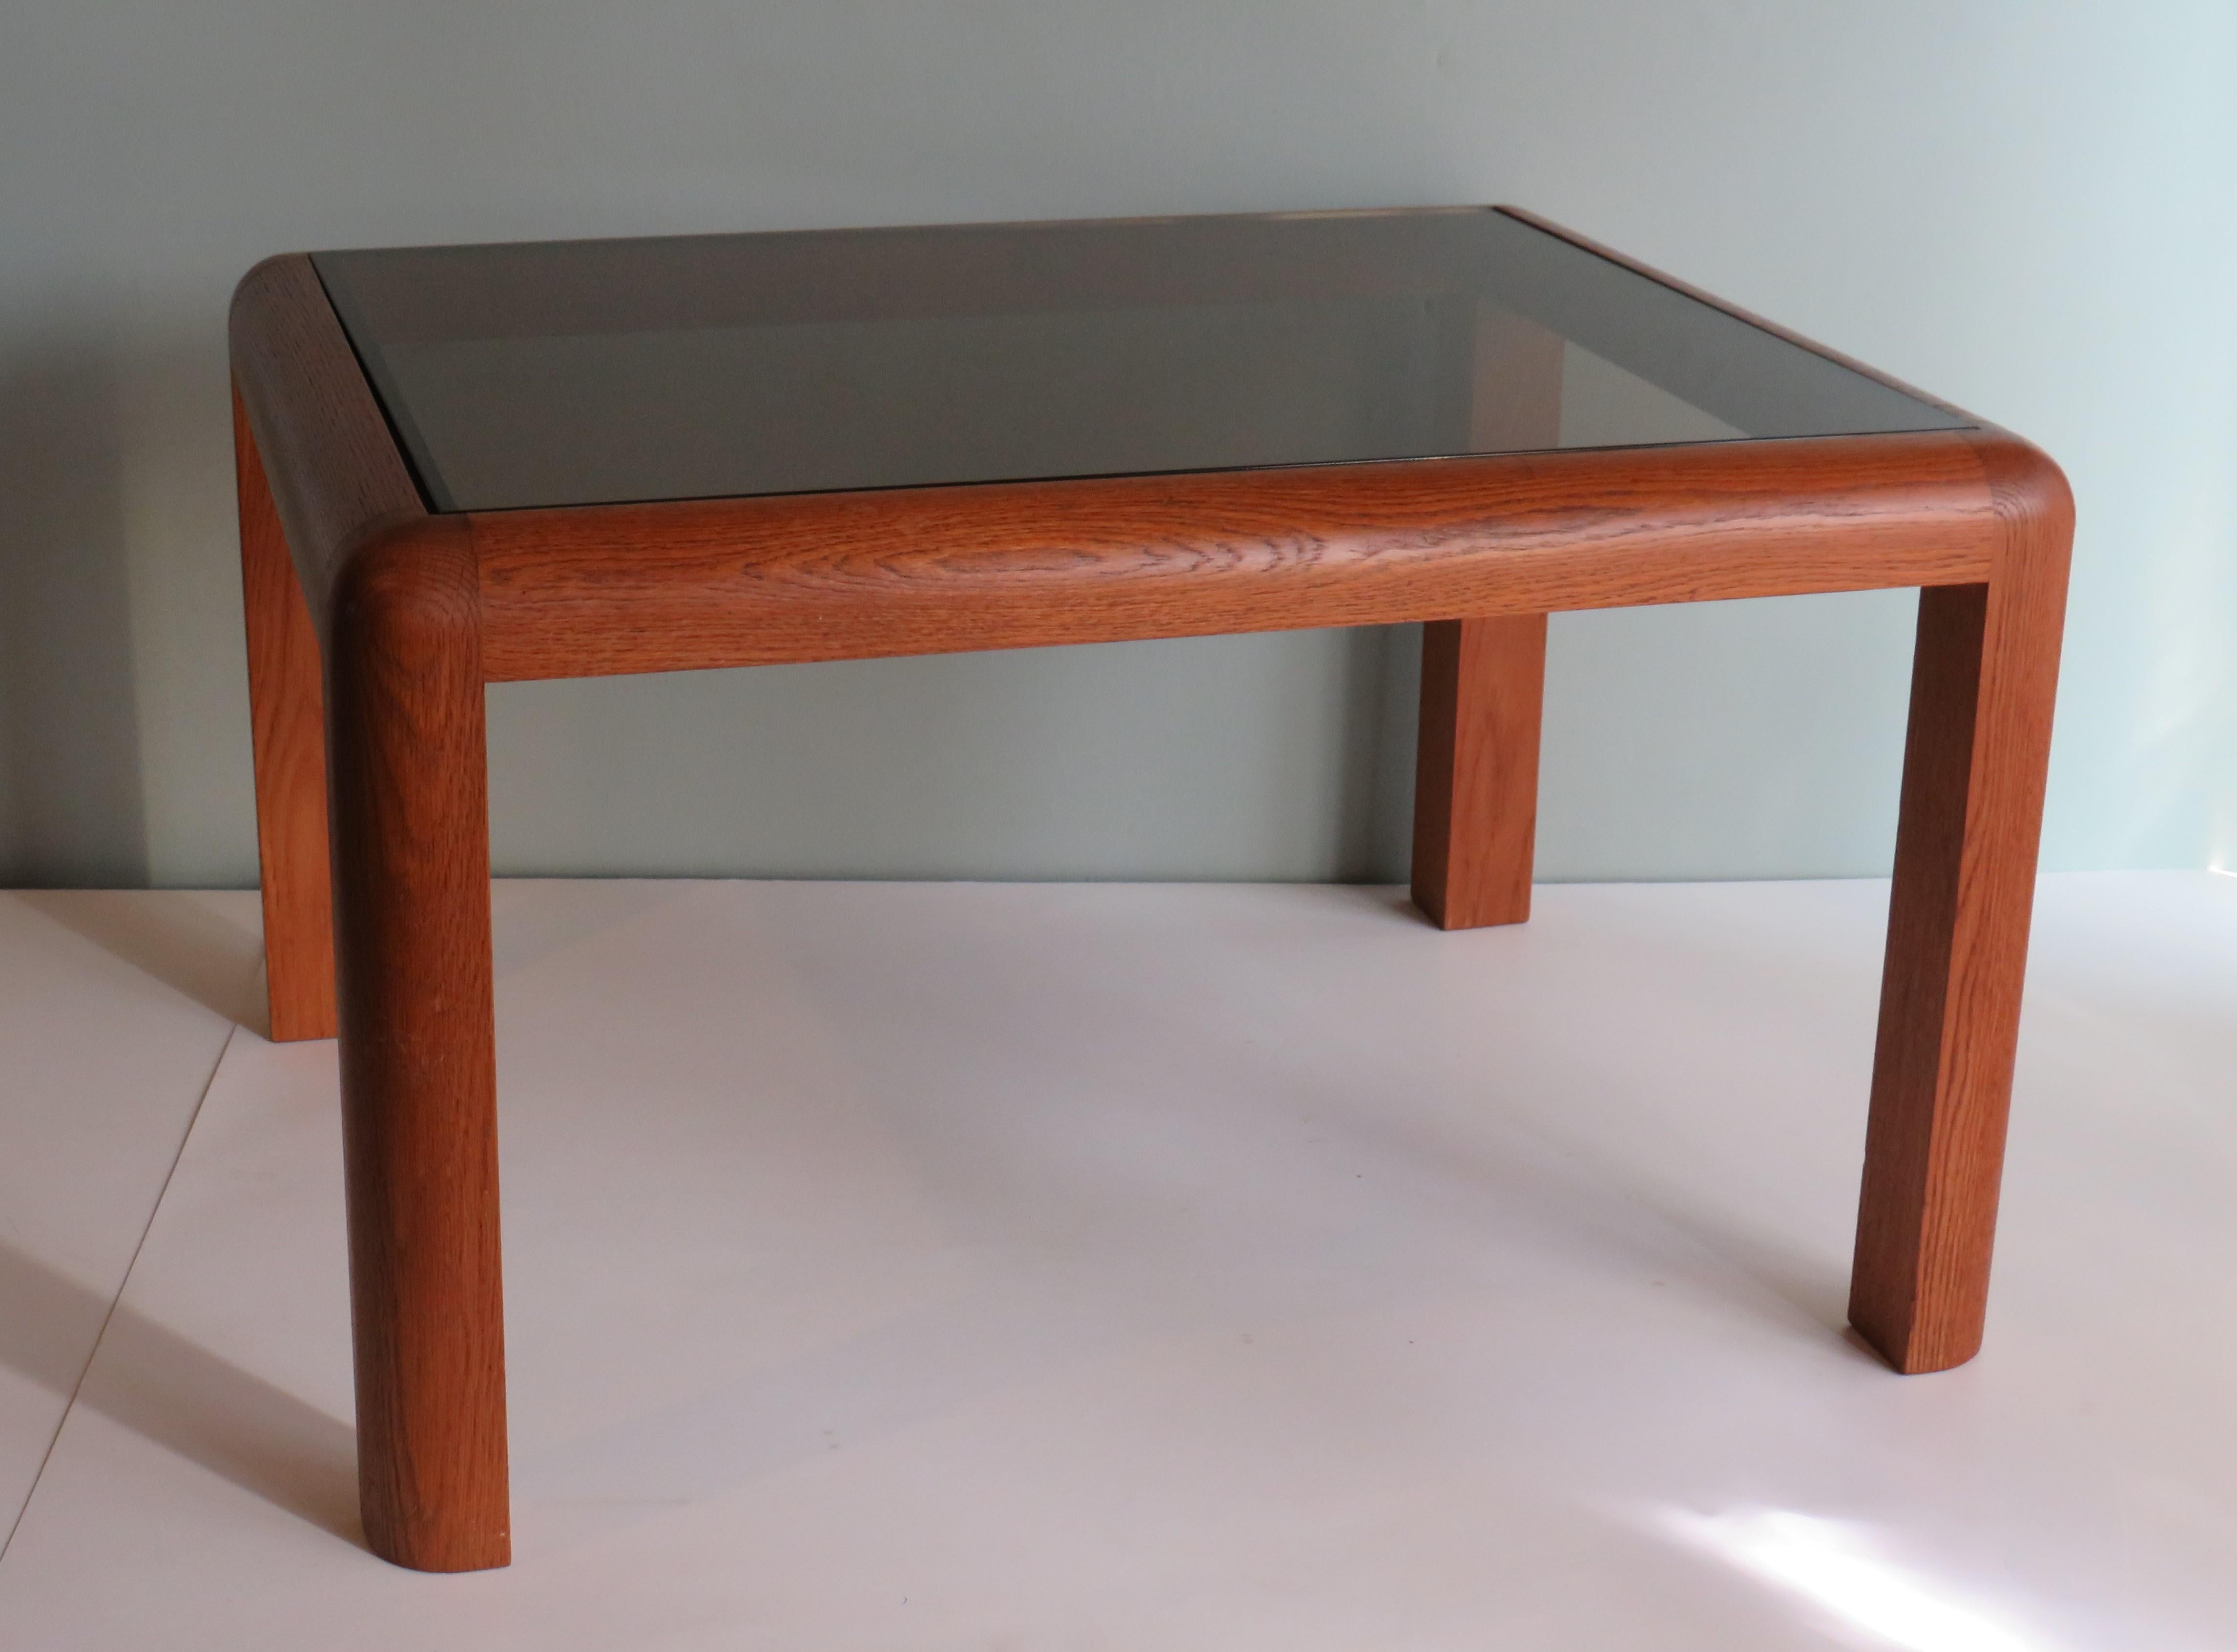 Exceptionnelle table basse carrée avec cadre en chêne et plateau en verre fumé,
conçu par Bob Van den Berge en 1962.
Cette table appartient à la série Konstructo.
Il y a un tampon d'usine présent.
Dimensions : H 37, L 60 et P 50 cm.
L'article